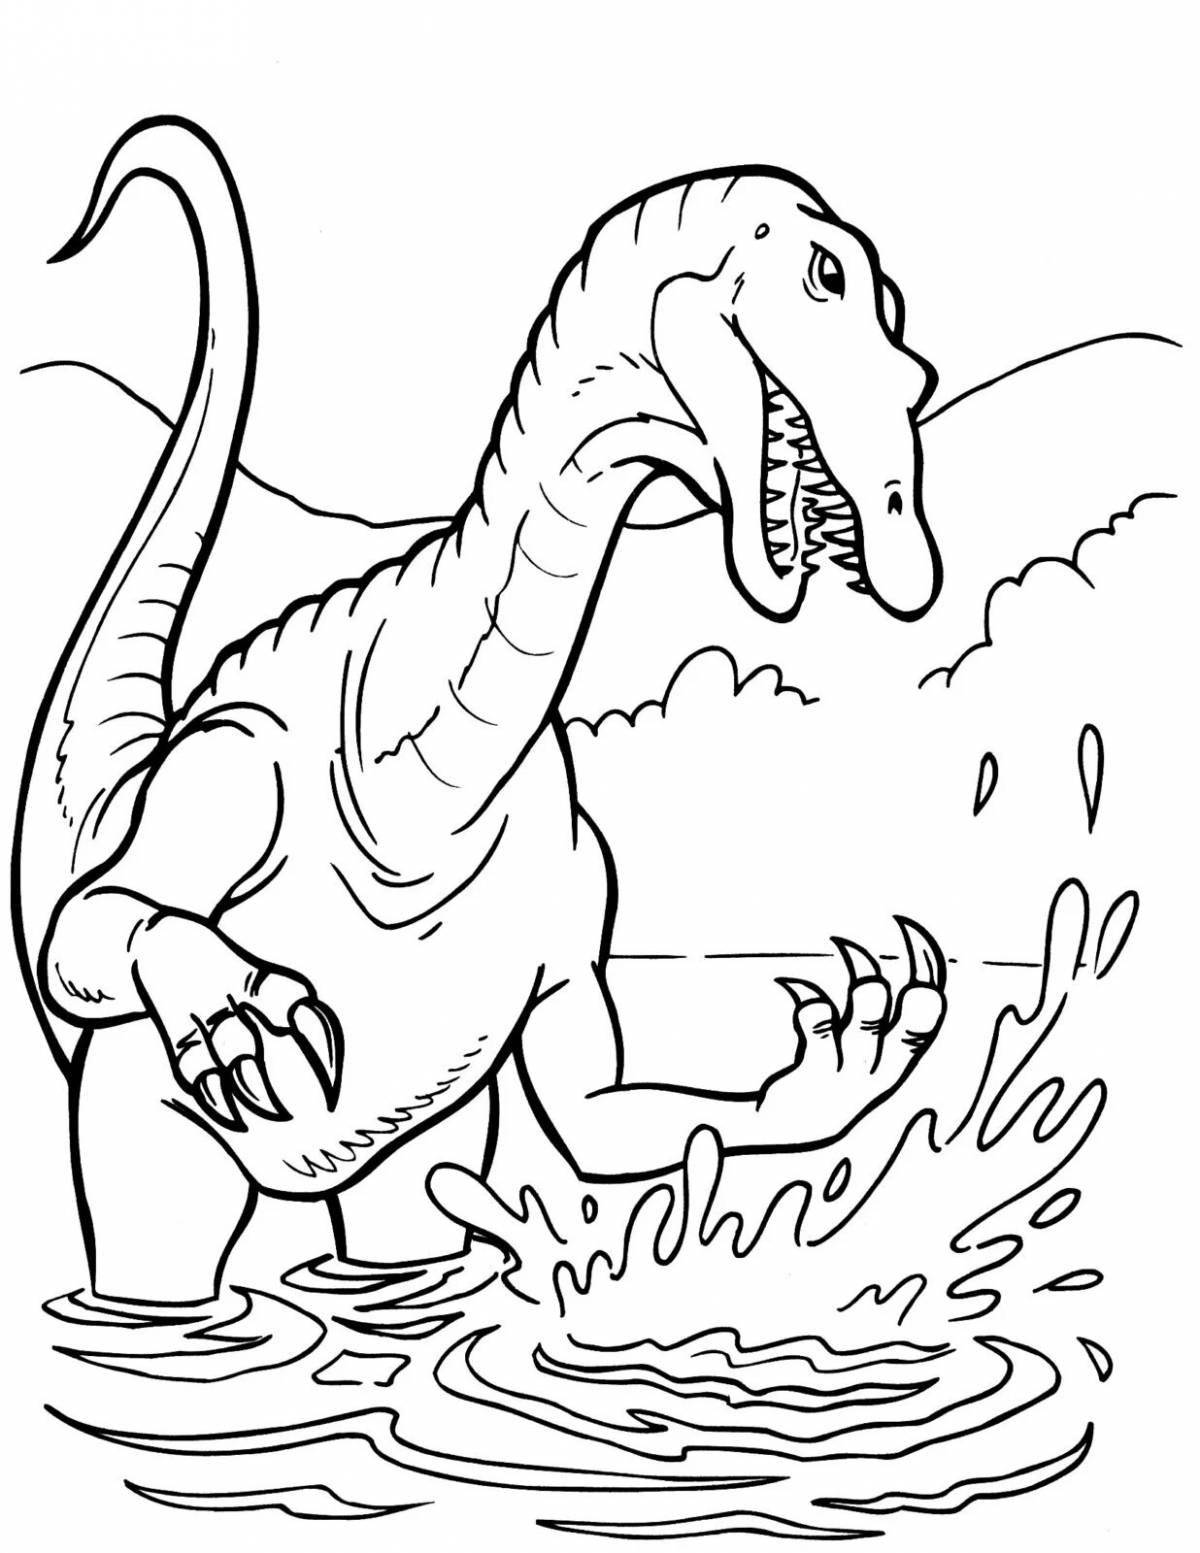 Веселые раскраски динозавров для мальчиков 7 лет